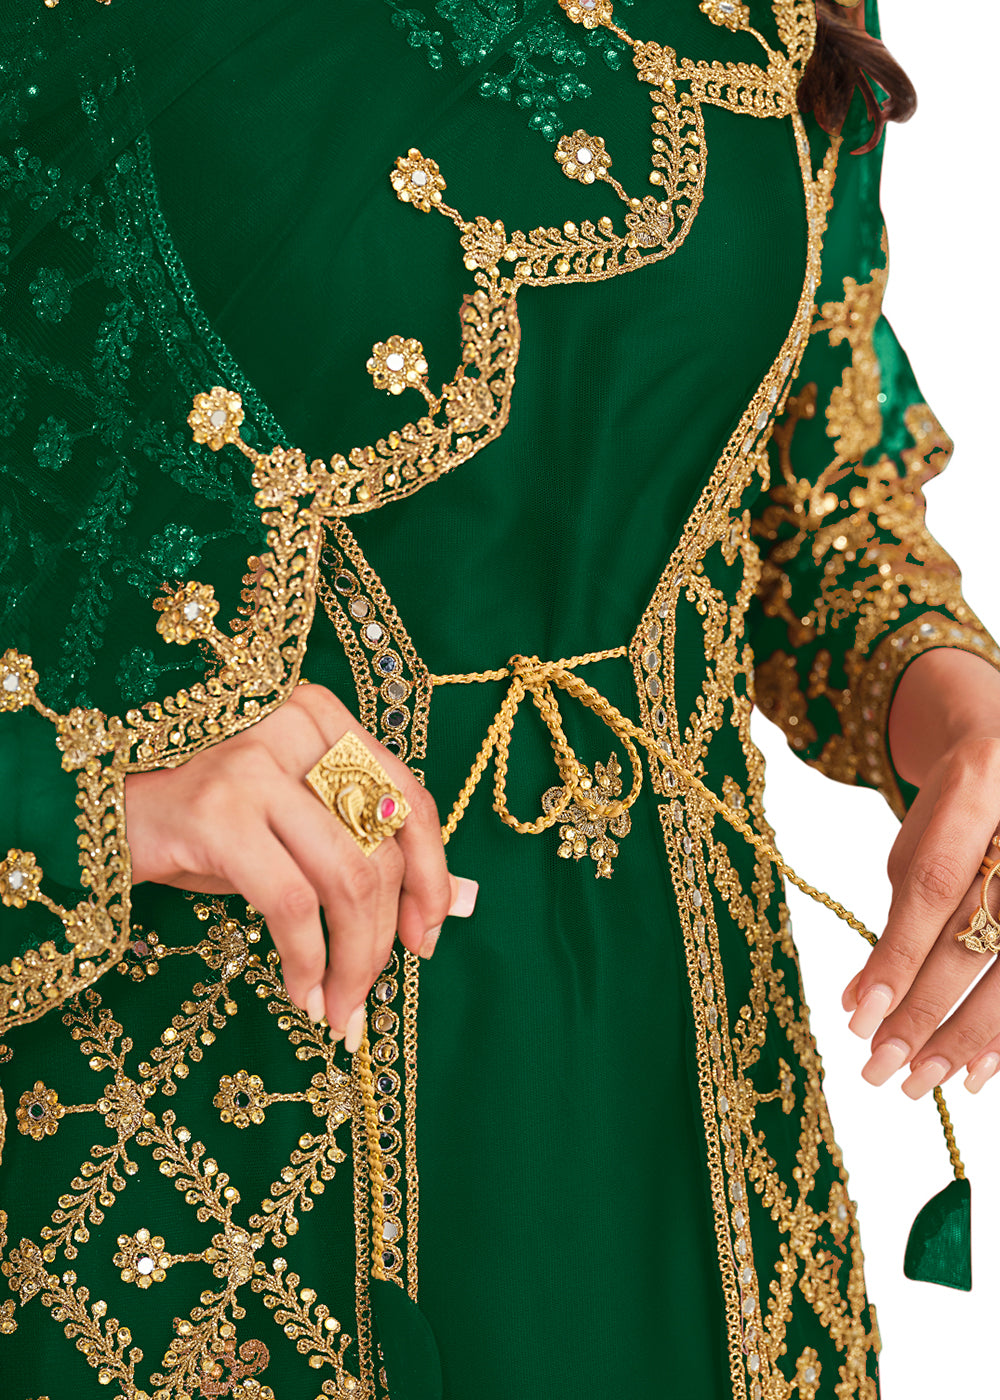 green and gold traditional attire in nigeria｜TikTok Search